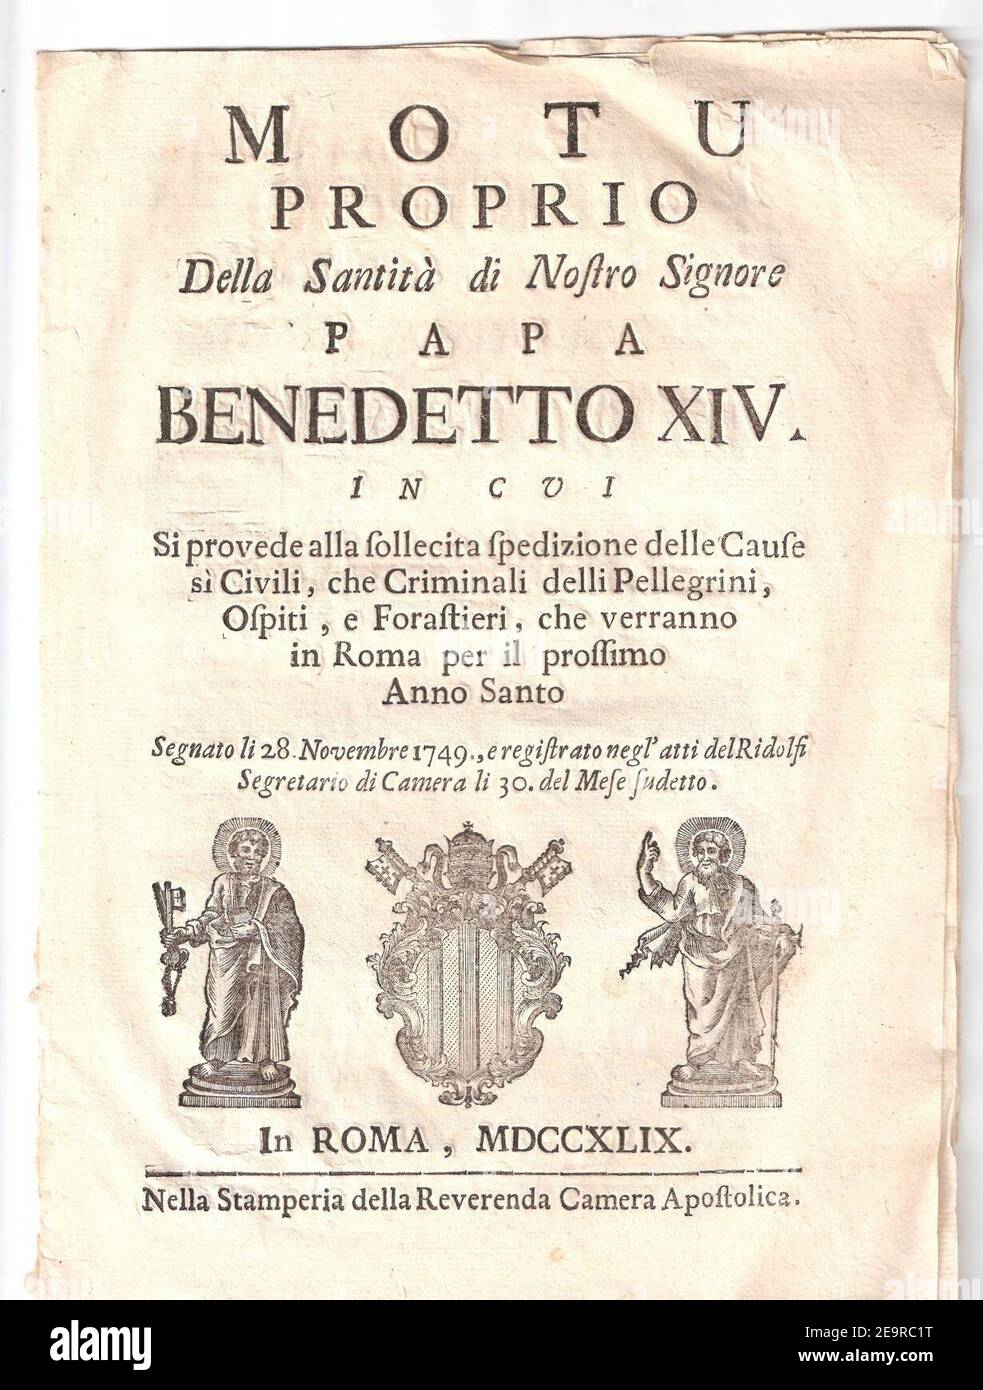 Motu Proprio della Santità di Nostro Signore Papst Benedictus XIV.. Stockfoto